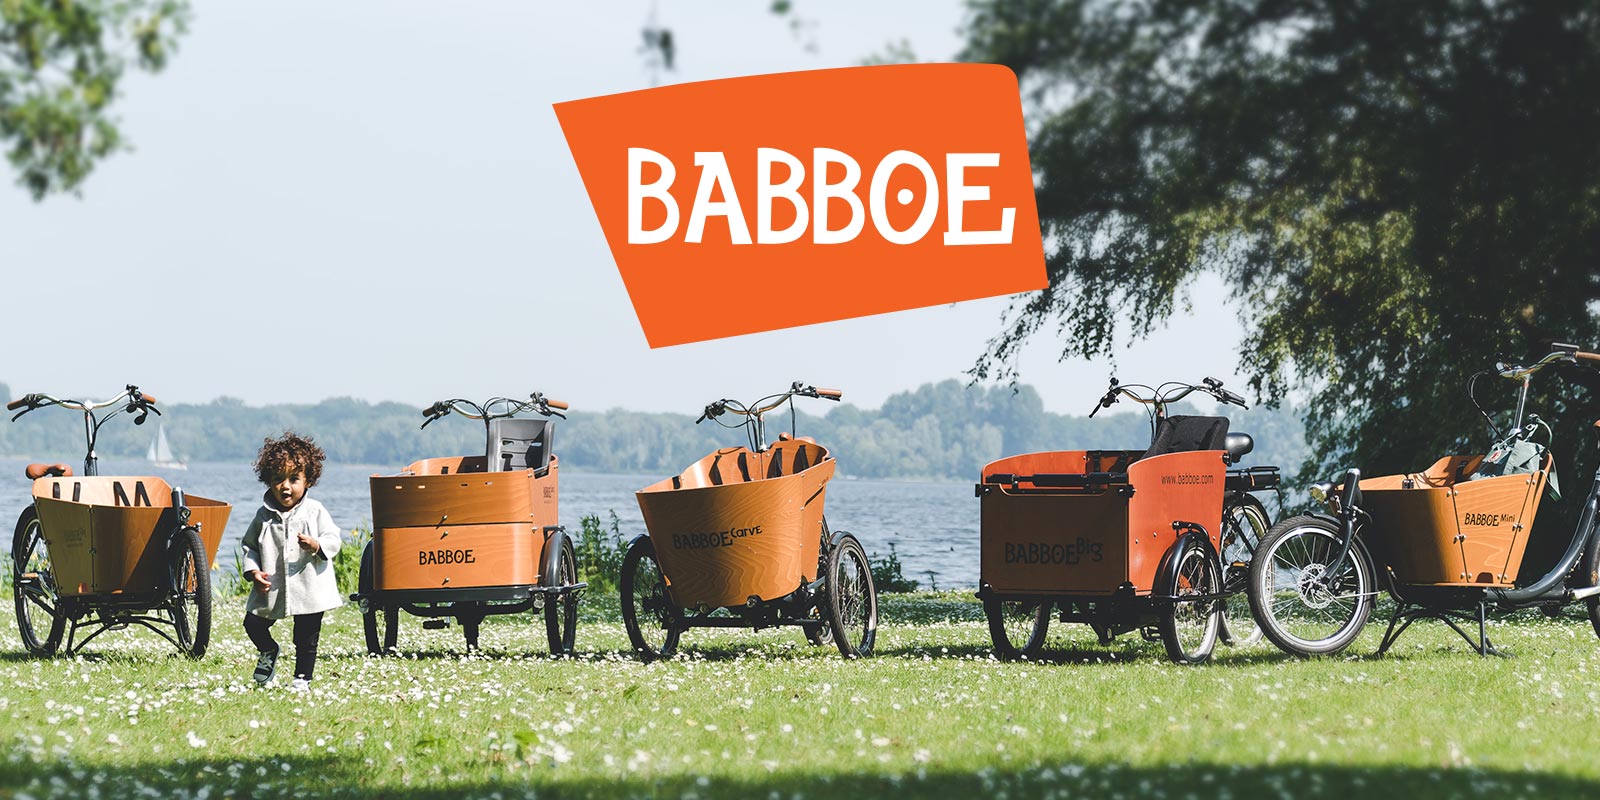 www-babboe-fr.translate.goog